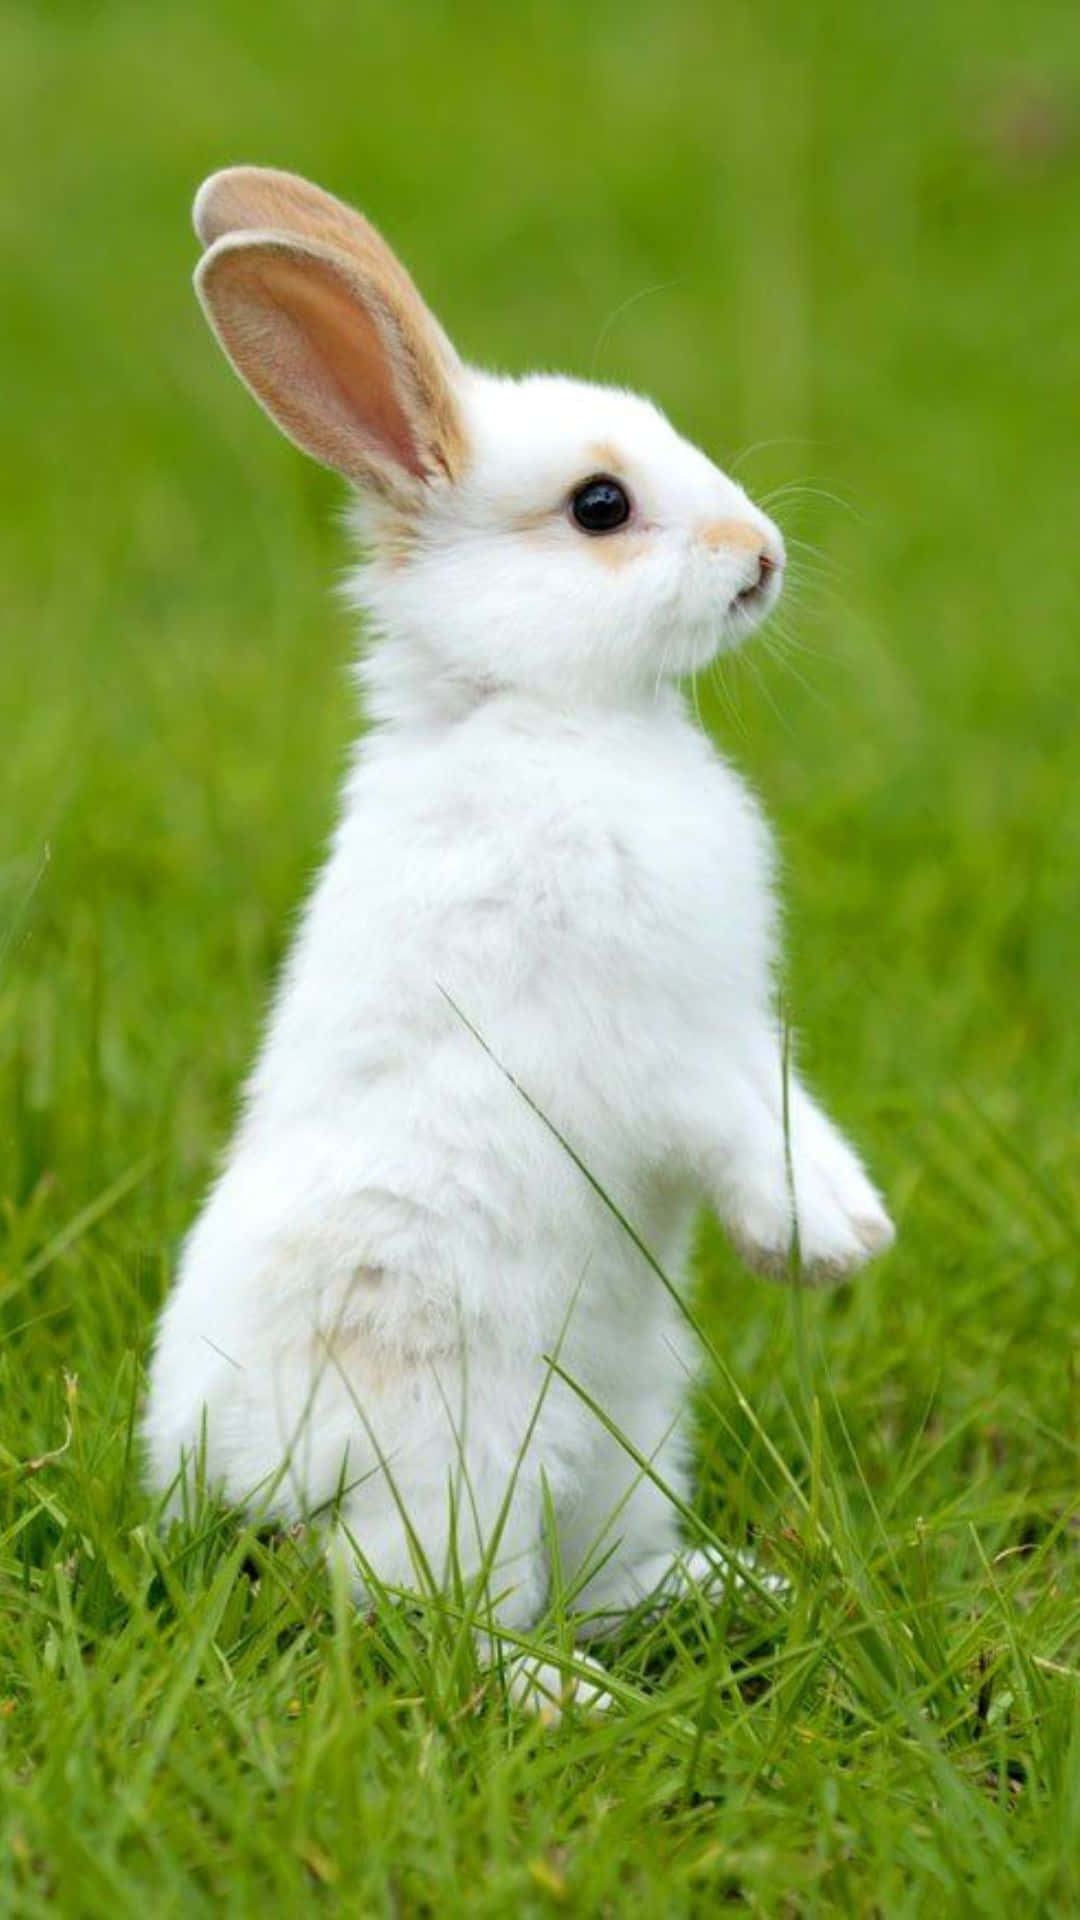 Rabbit Wallpapers - Top 35 Best Rabbit Backgrounds Download